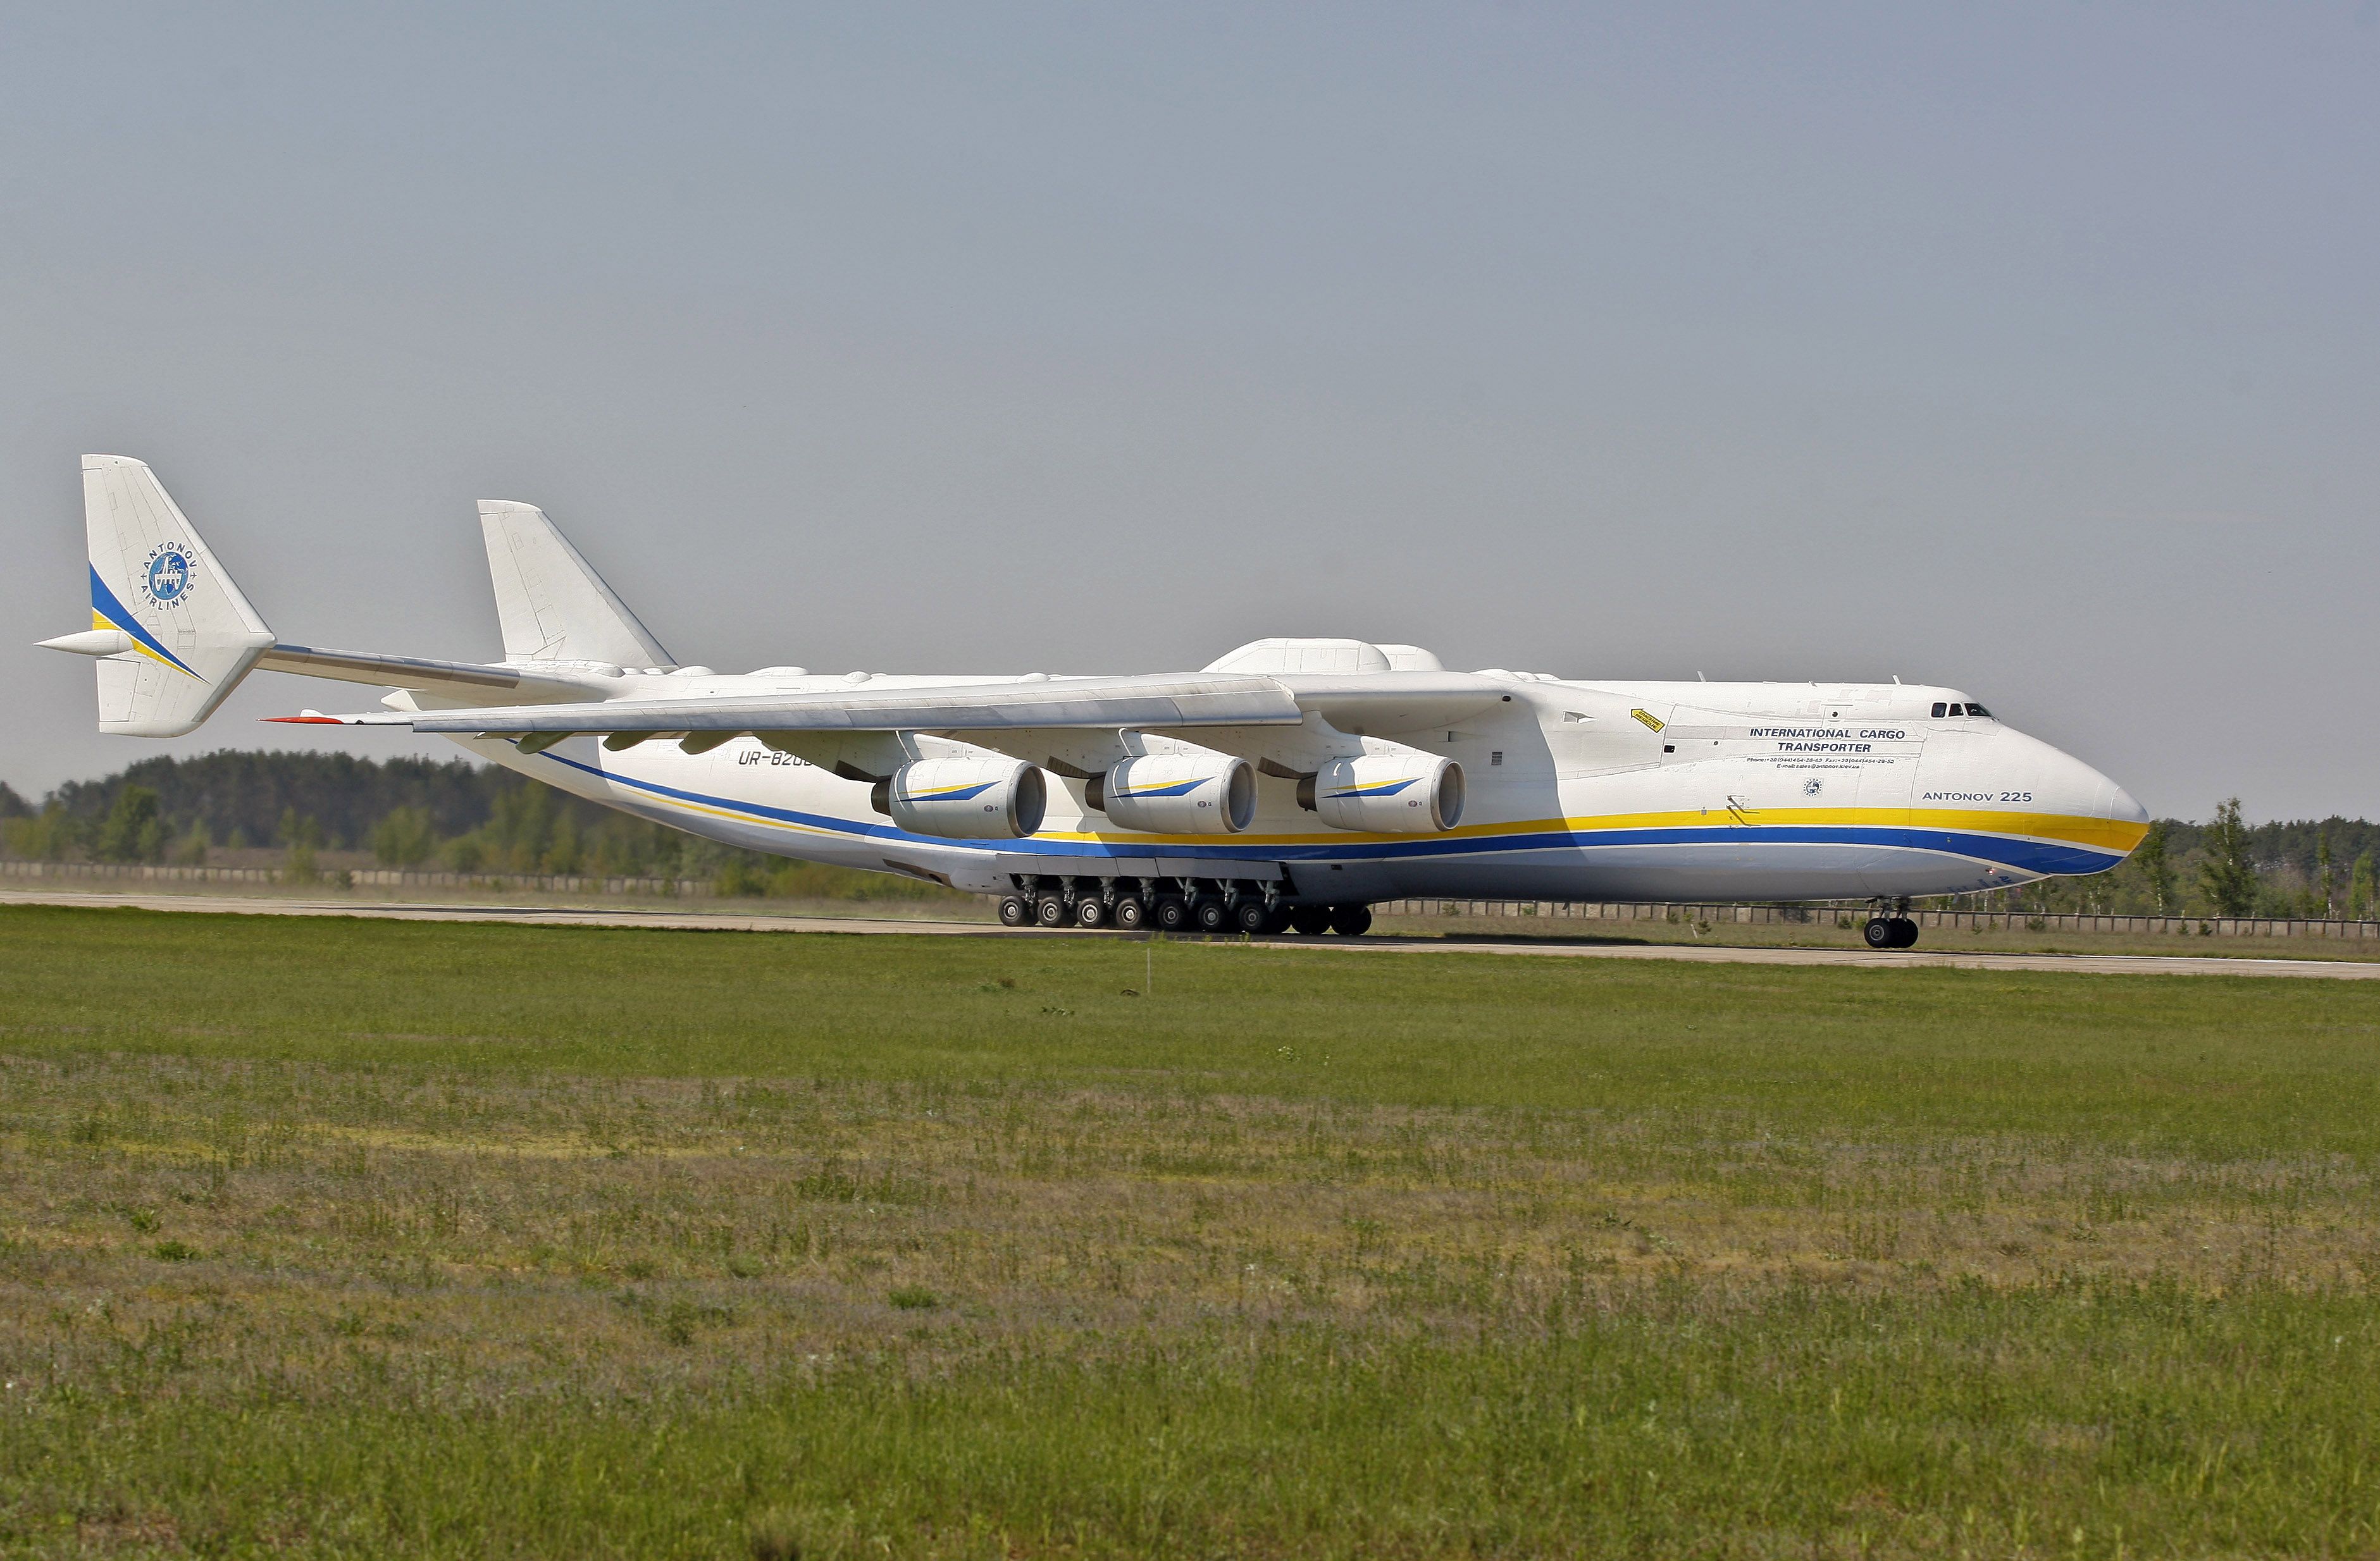 AN-225 Mriya on the runway at Gostomel Airport